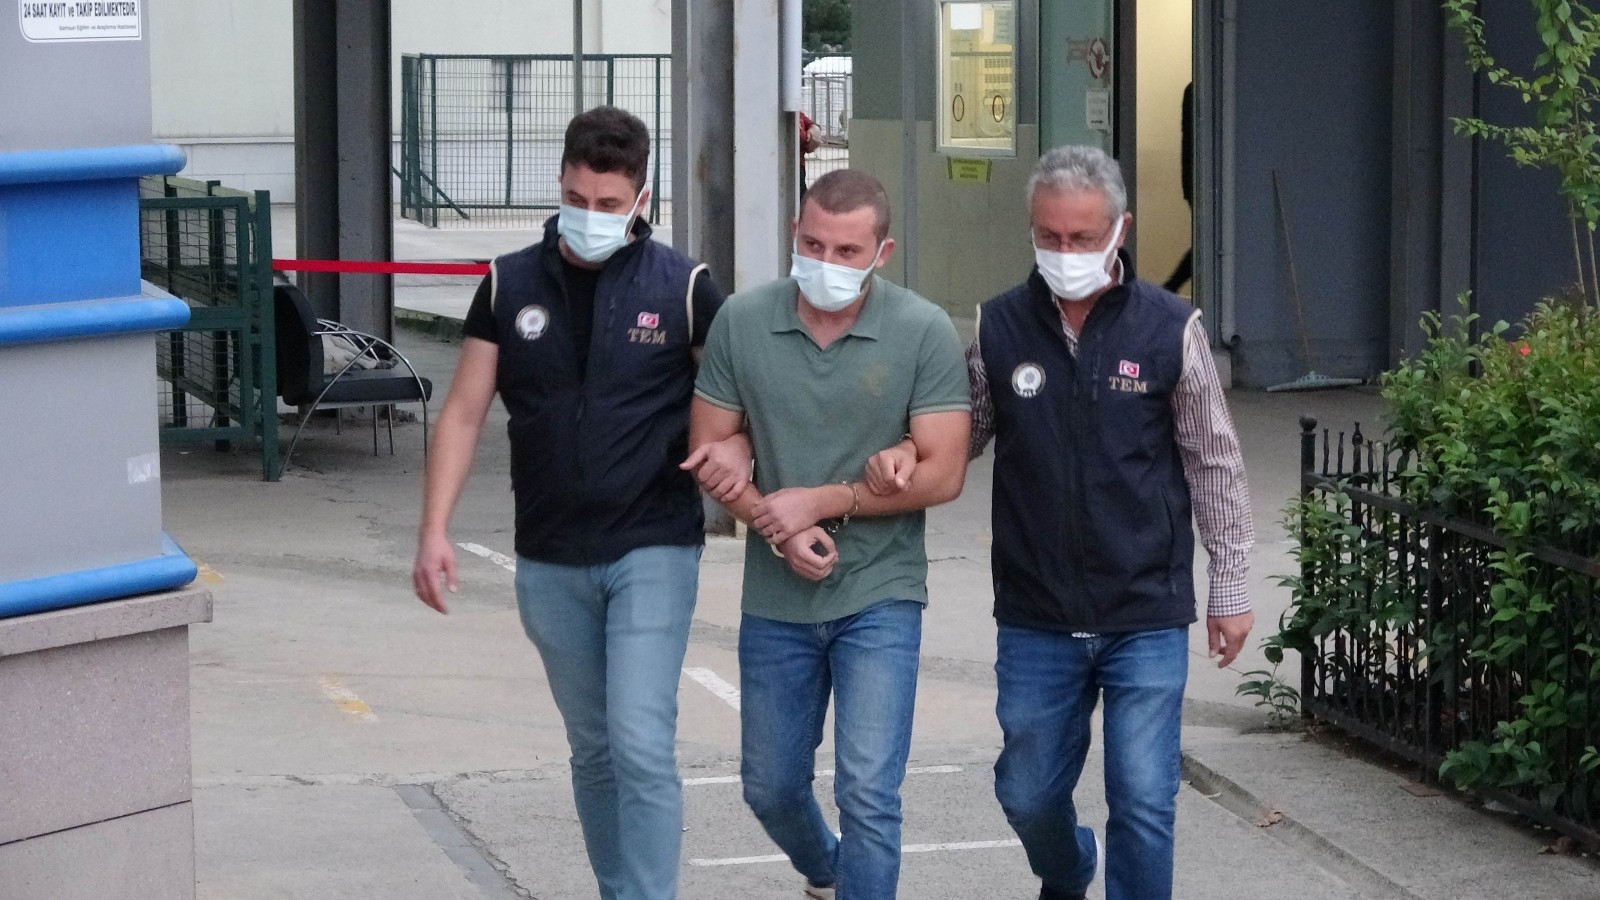 Samsun'da FETÖ'den 1 araştırma görevlisi ve 2 üniversite öğrencisi gözaltına alındı
